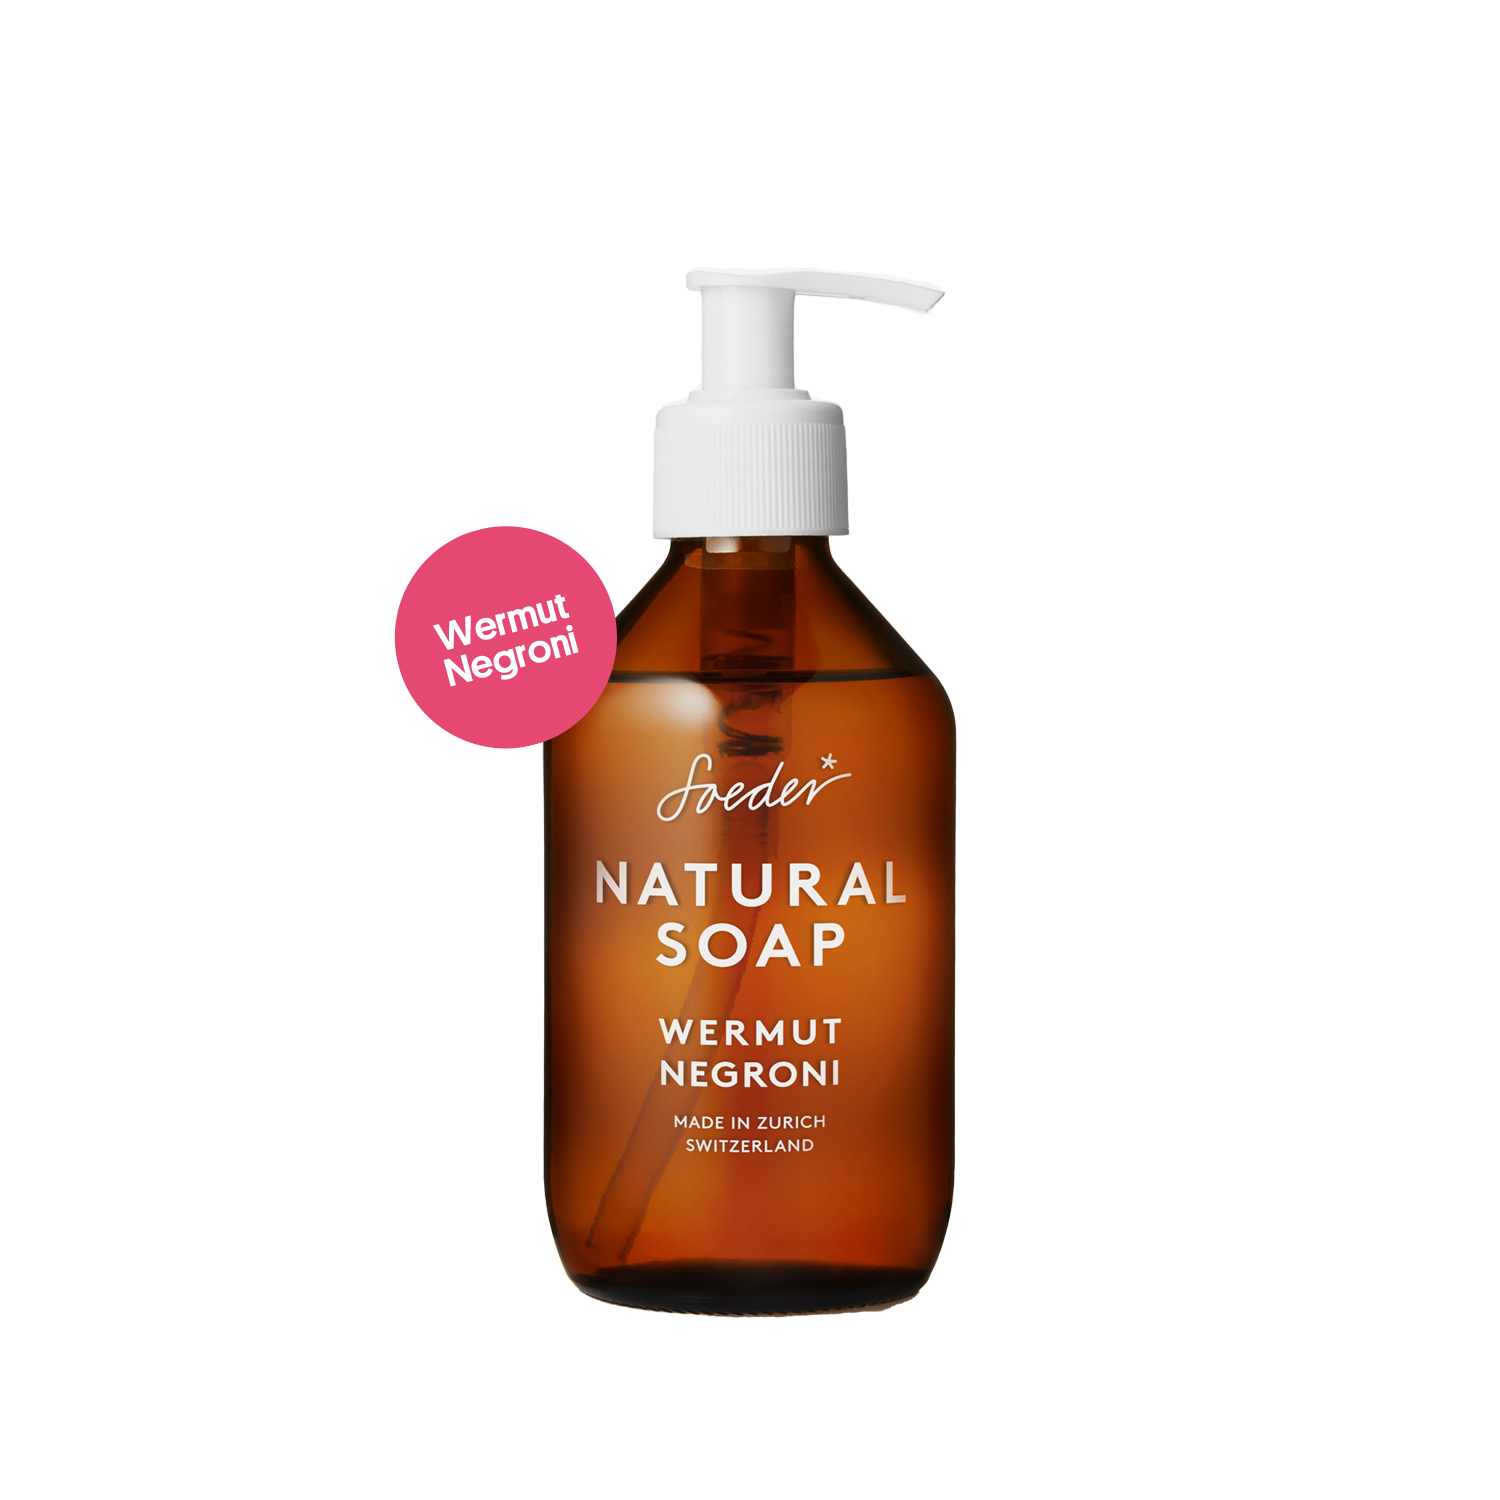 Natural Soap - Wermut Negroni 250 ml von soeder*